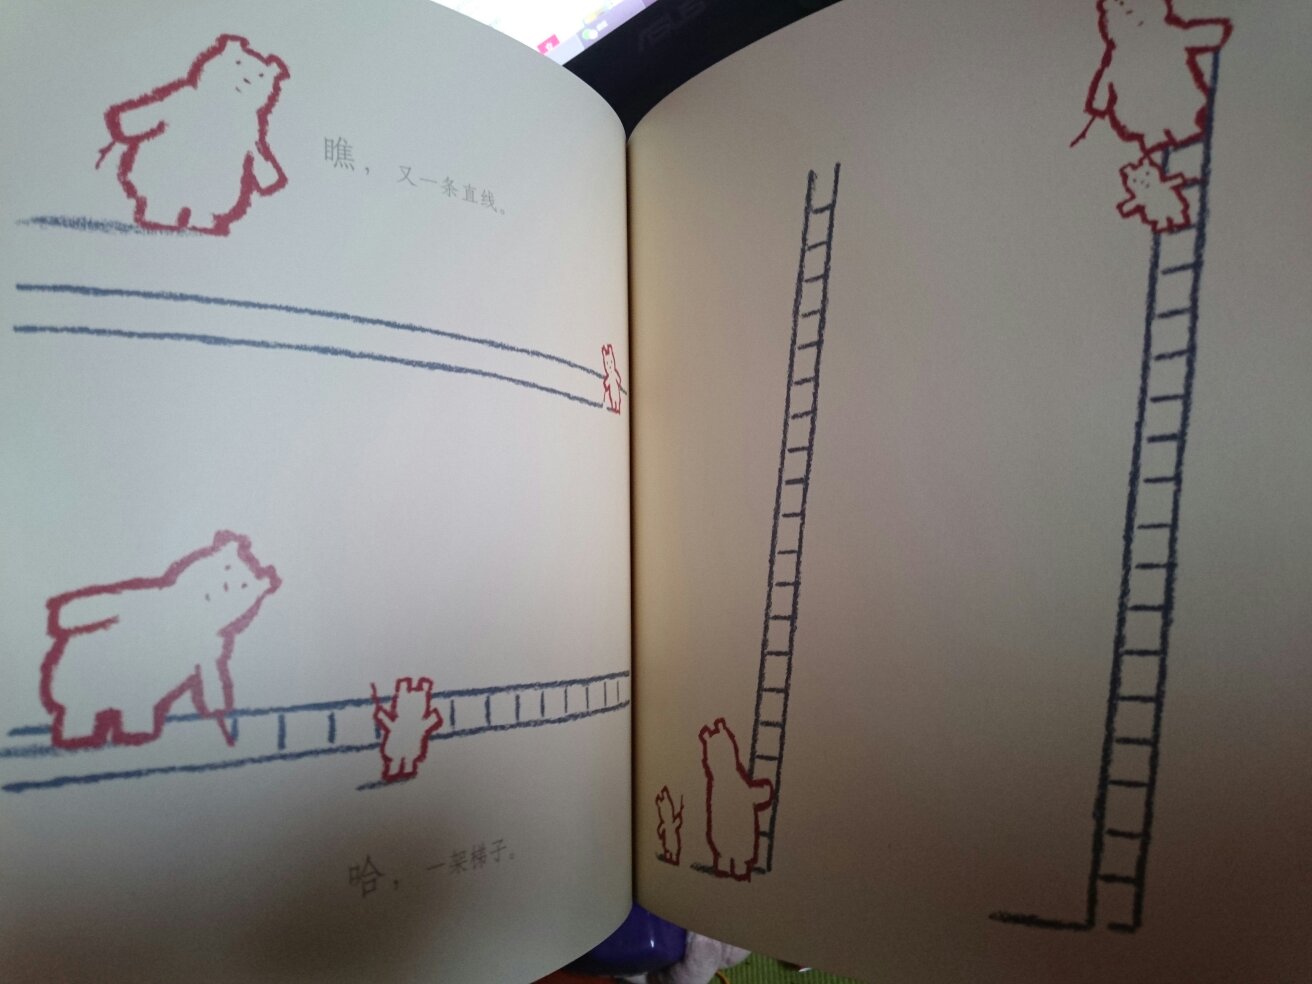 亲子陪伴的重要性，在书中体现得淋漓尽致。哪怕只是陪着孩子画几条线，她也会很开心。